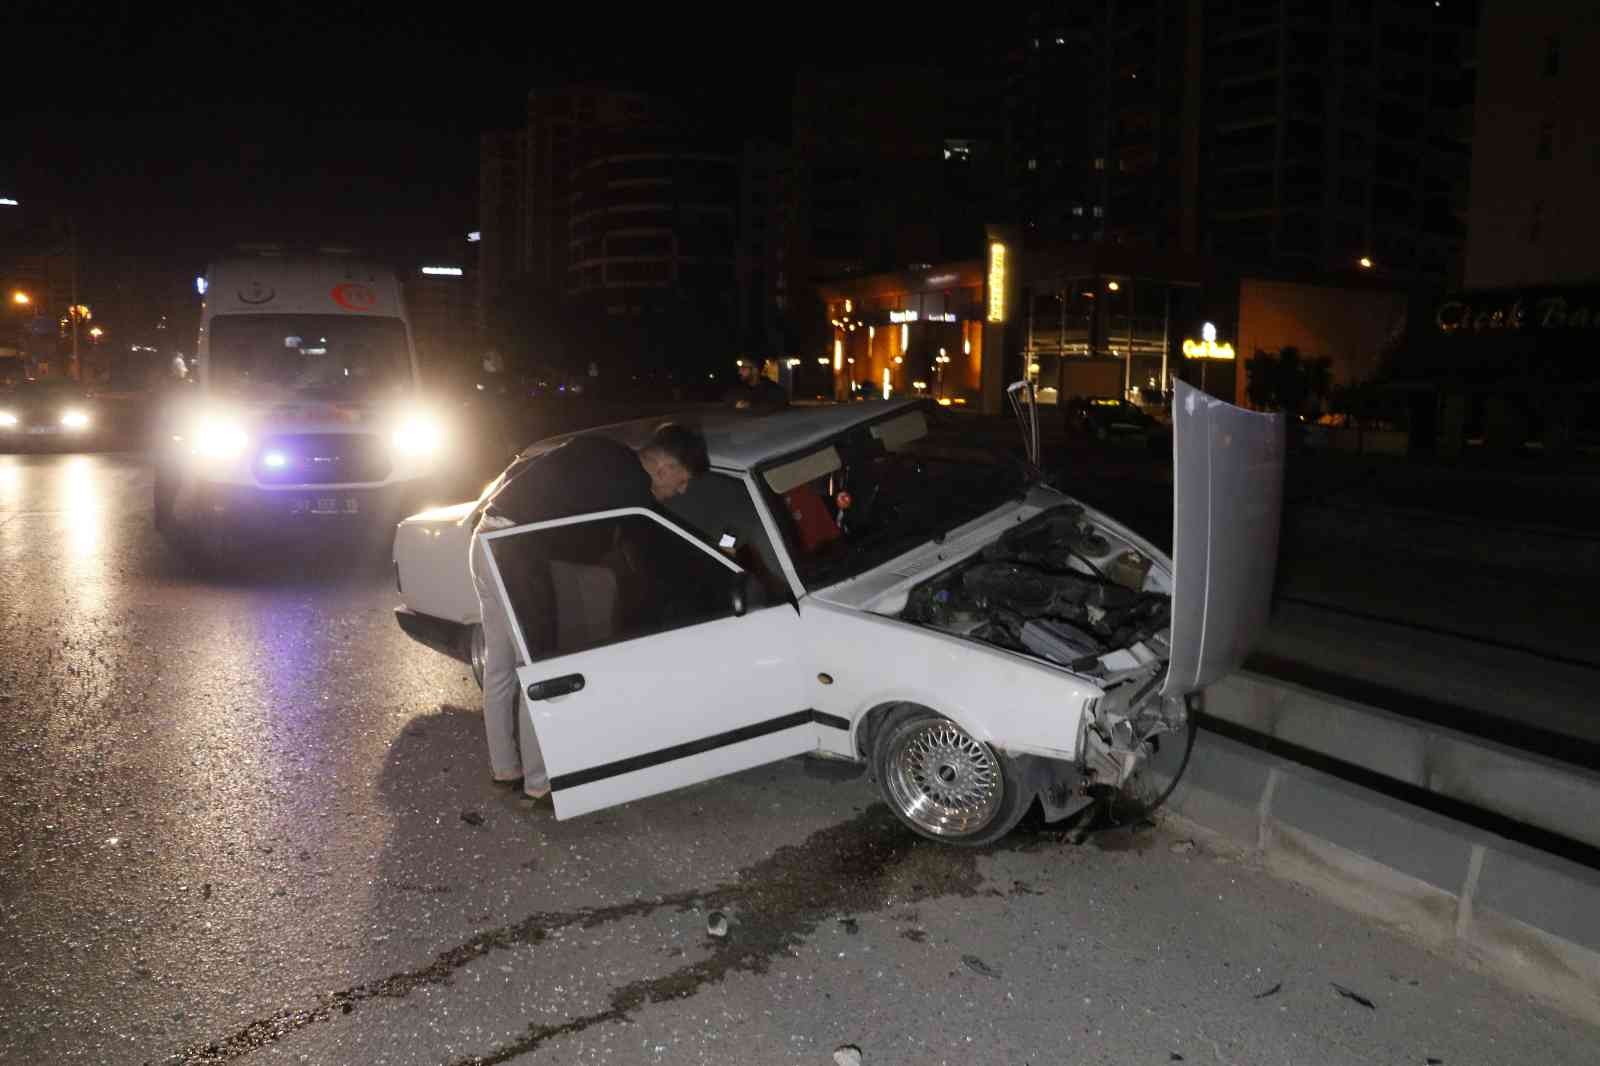 Adana’da kontrolden çıkan otomobil refüje çıktı: 1 yaralı #adana